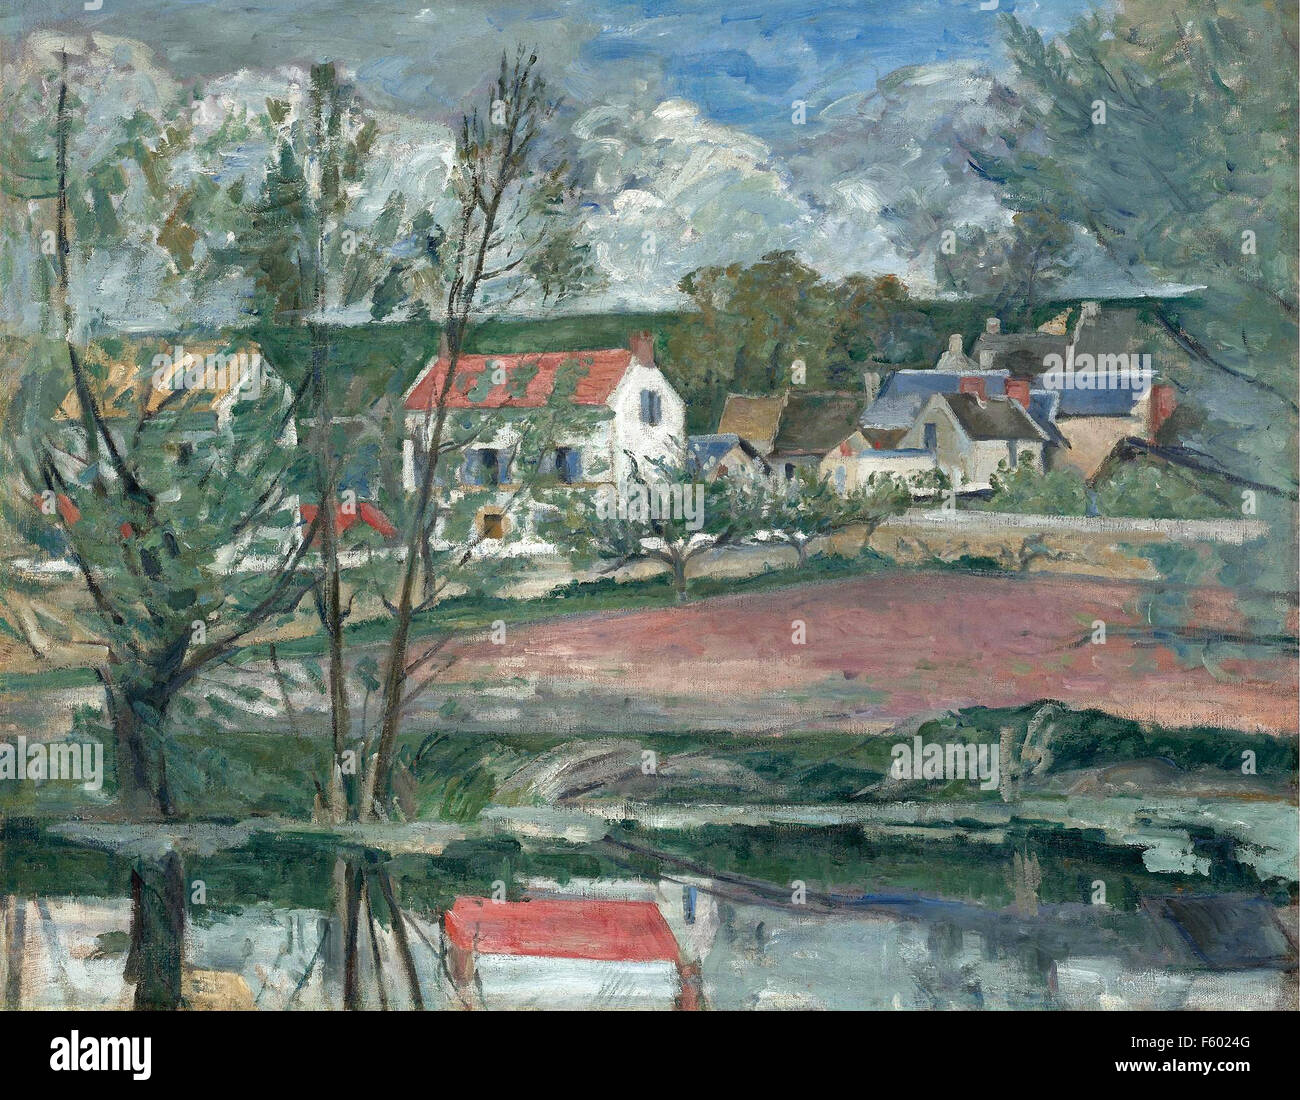 Paul Cézanne - Paysage des bords de l'Oise Stock Photo